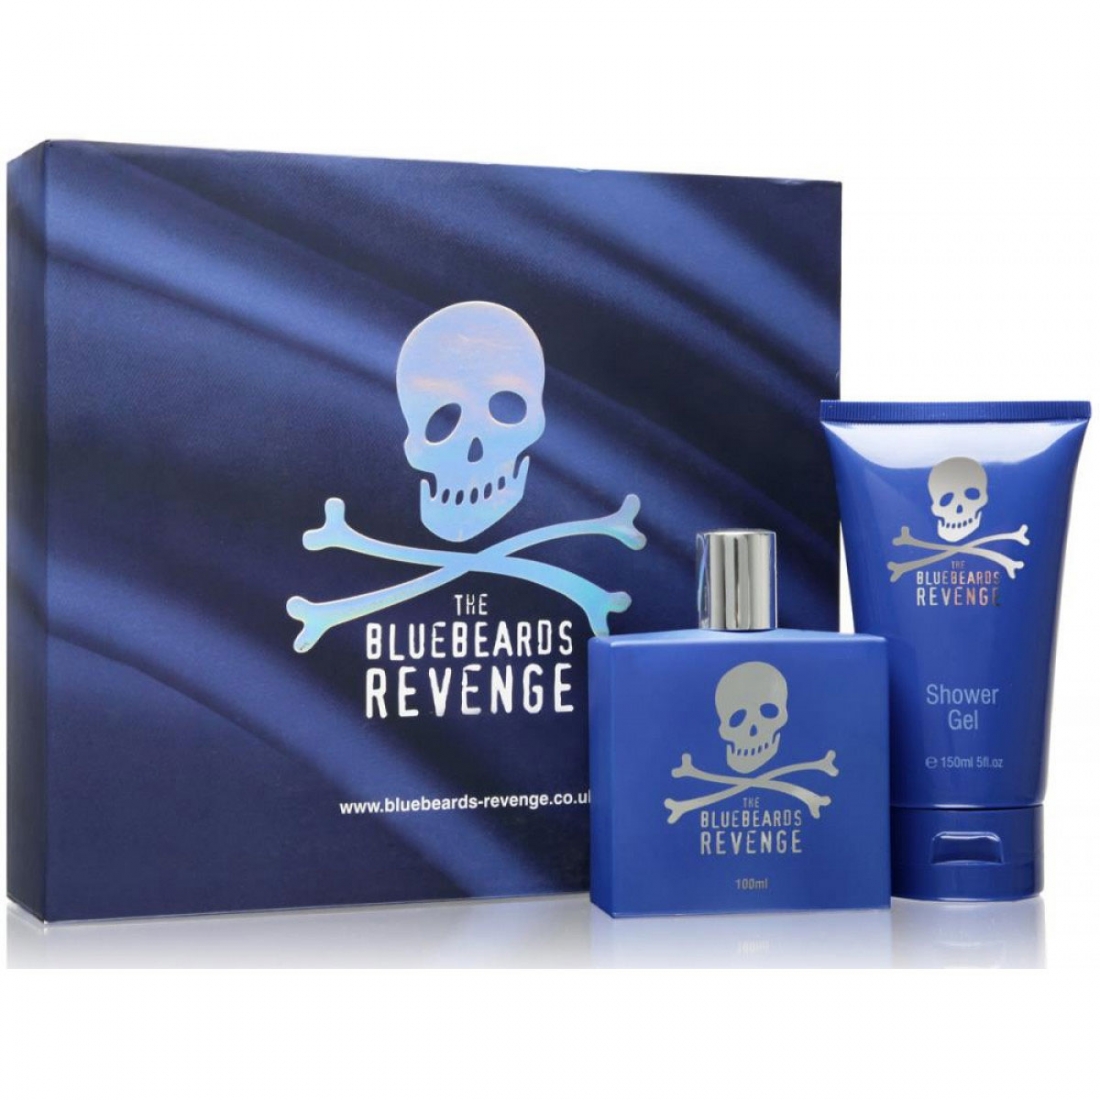 The Bluebeards Revenge - Gift Set